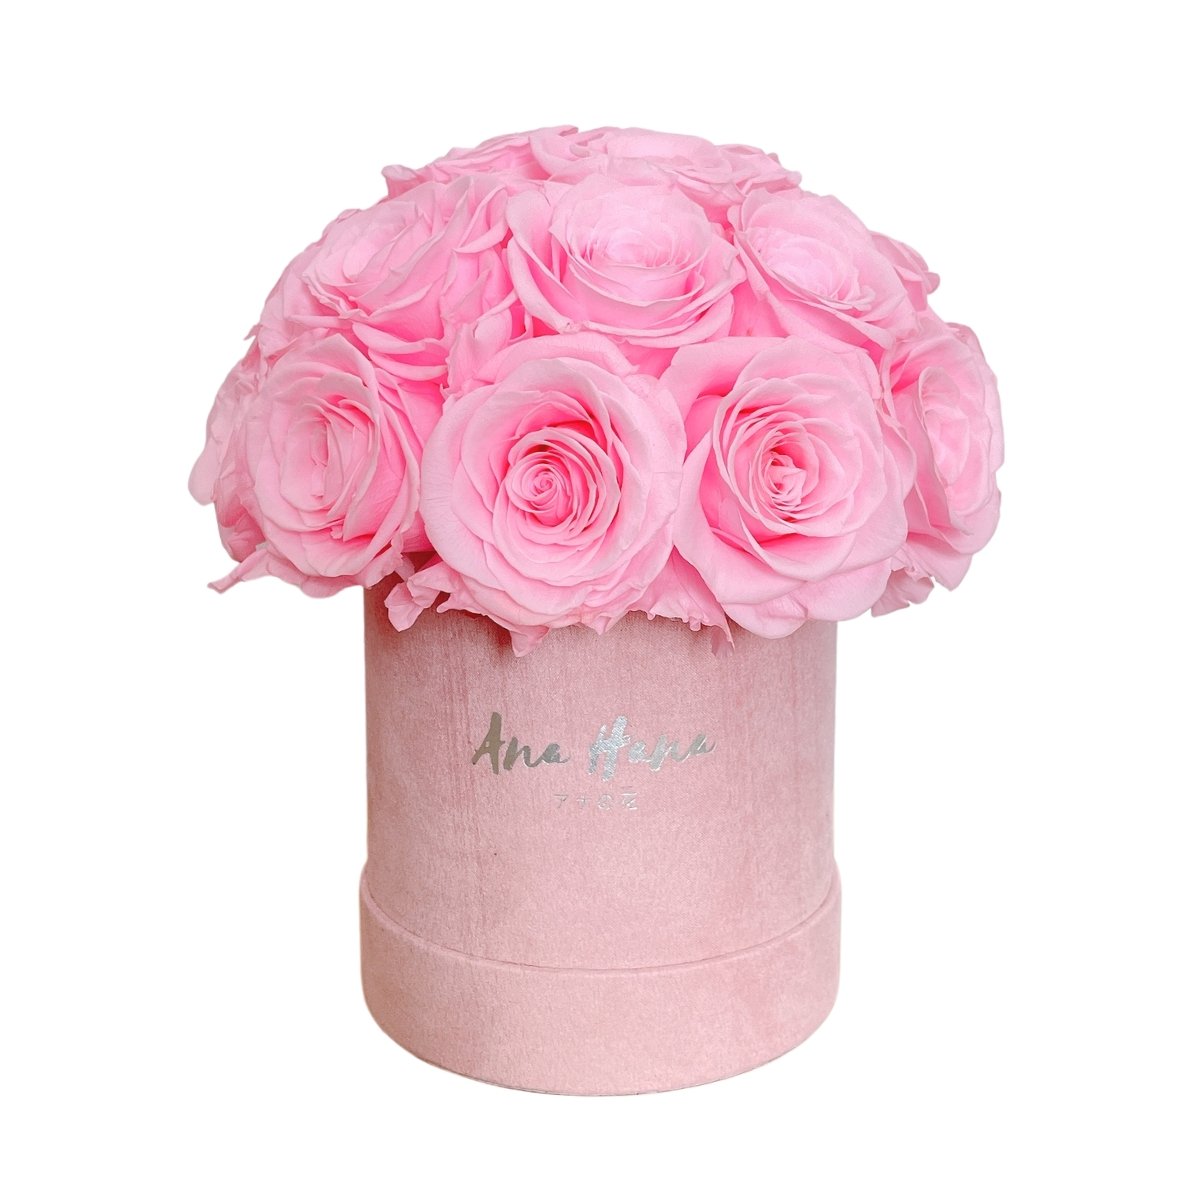 Classic Bucket Full - Pink Rose - Flower - 25 Roses - Preserved Flowers & Fresh Flower Florist Gift Store